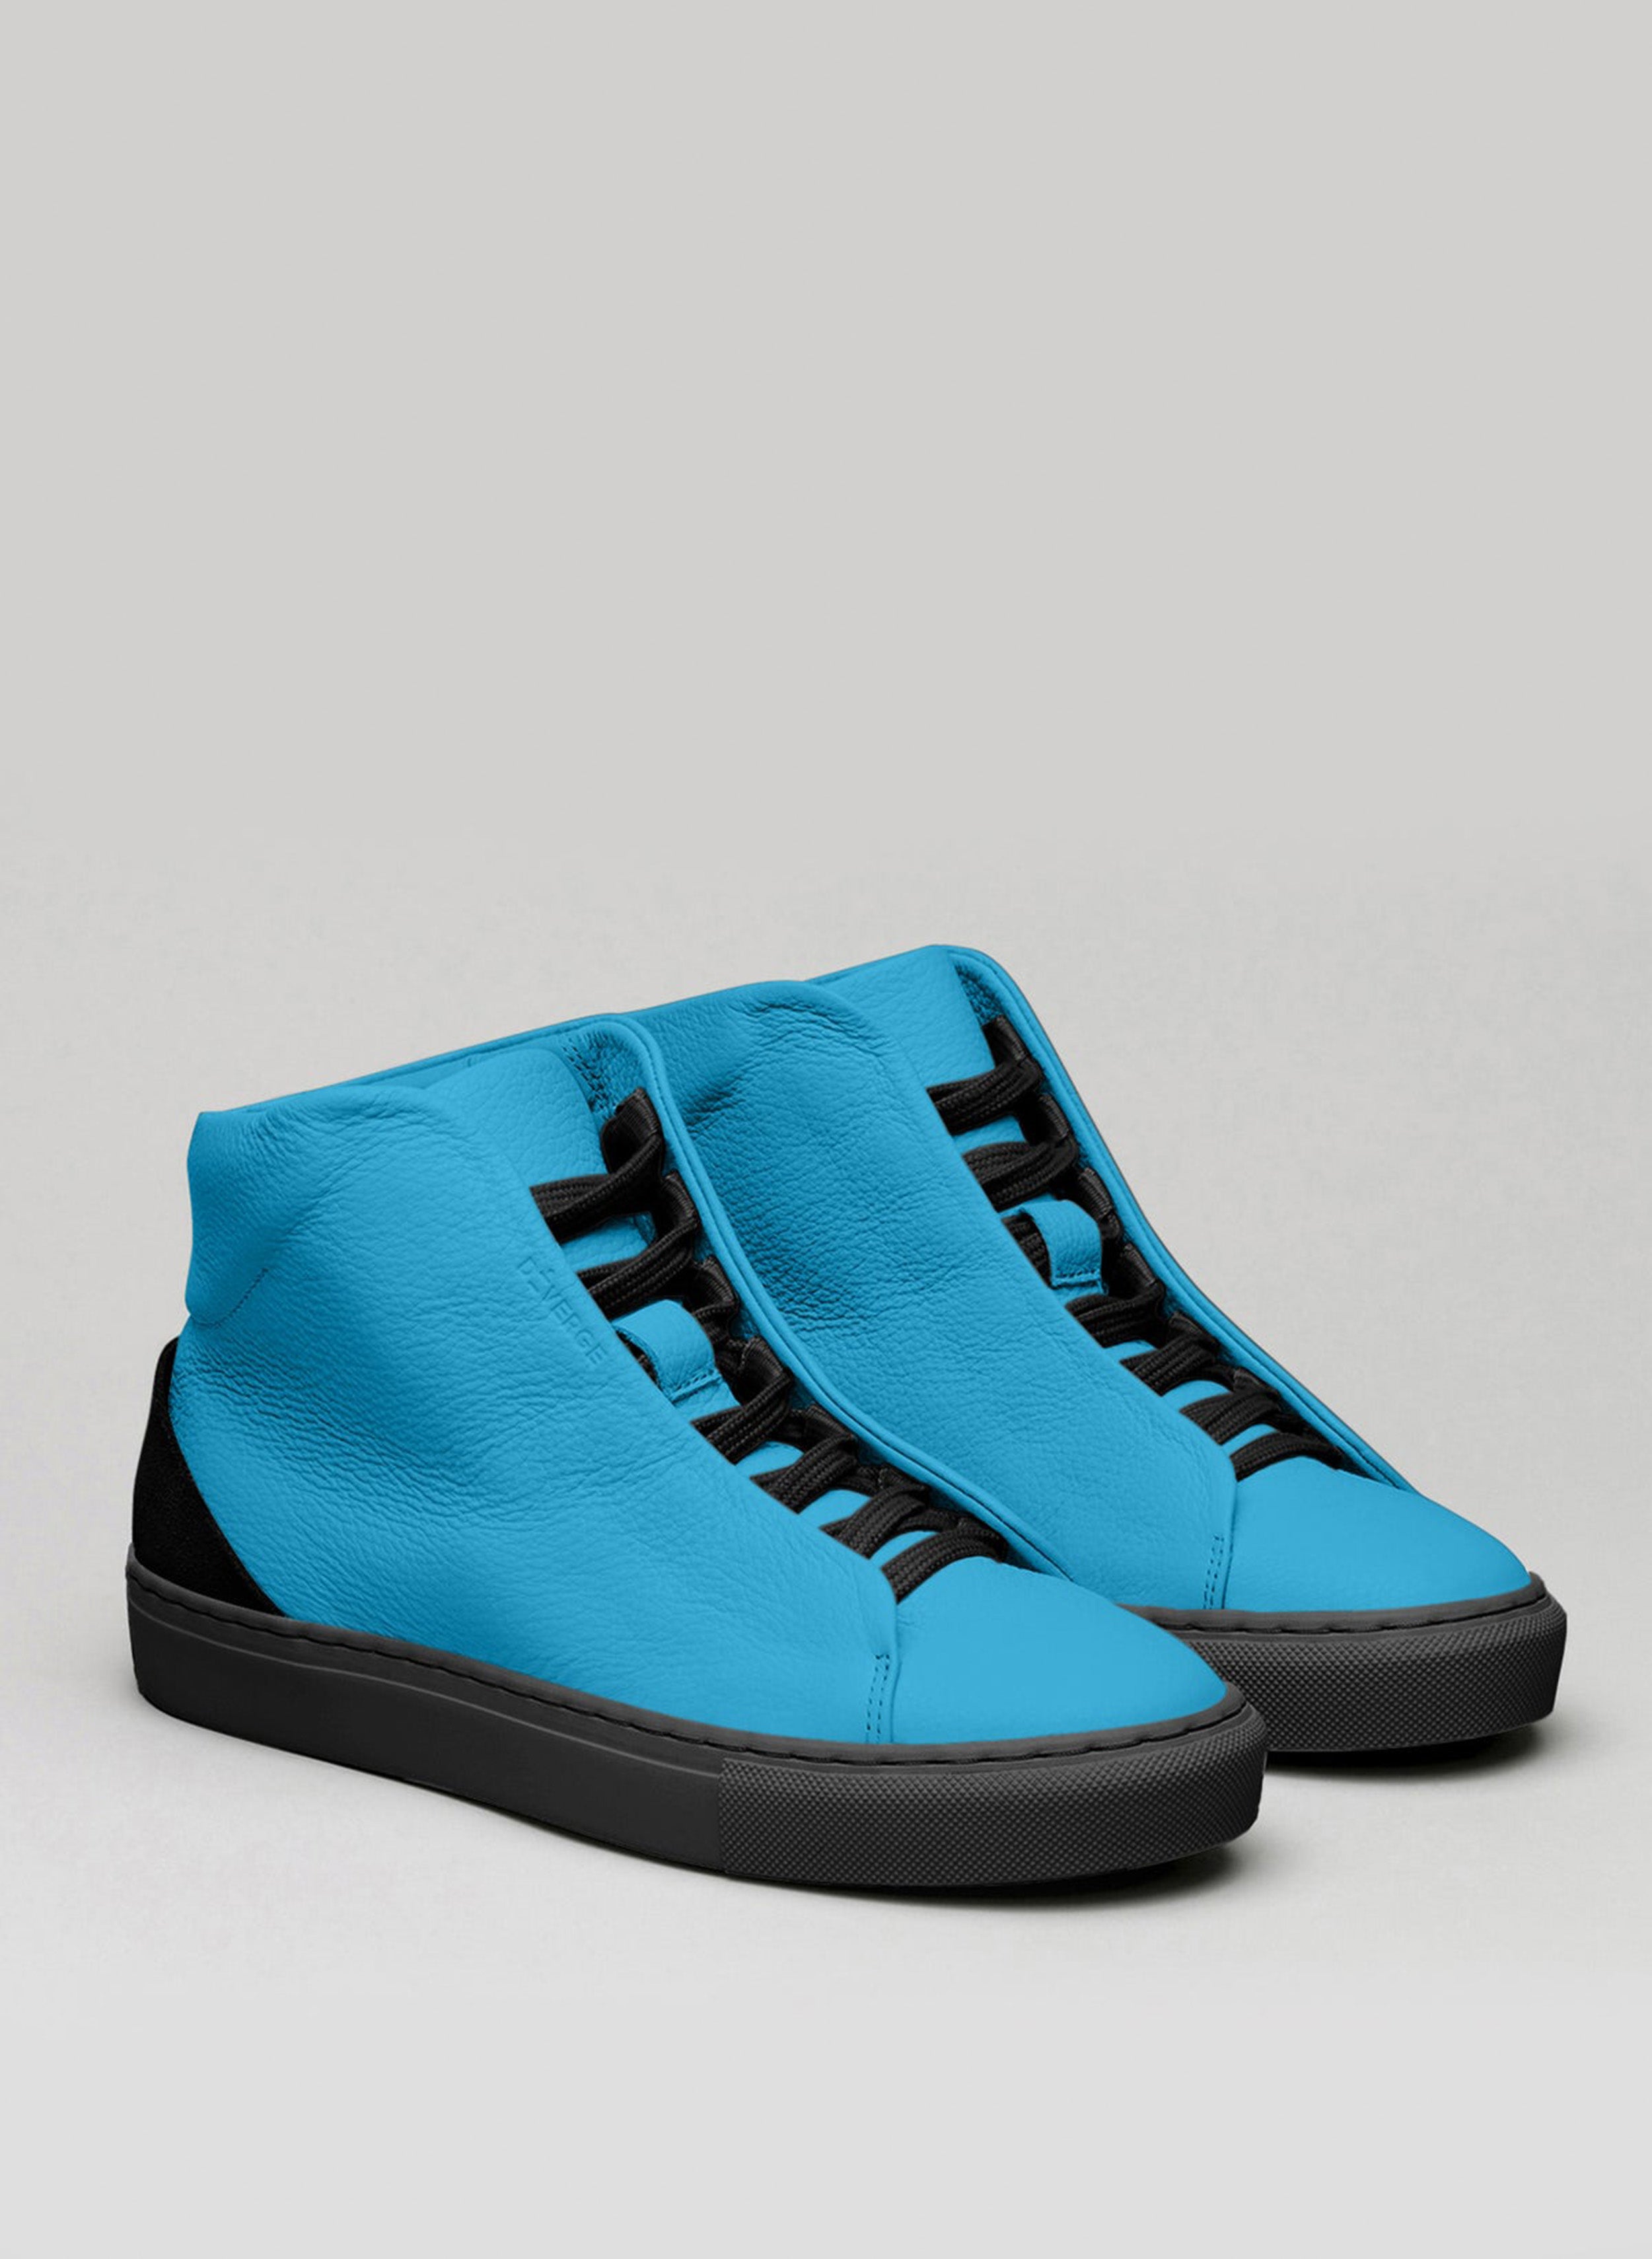 Un par de zapatillas altas azules sneakers con cordones negros, muestra de zapatos personalizados de Diverge.